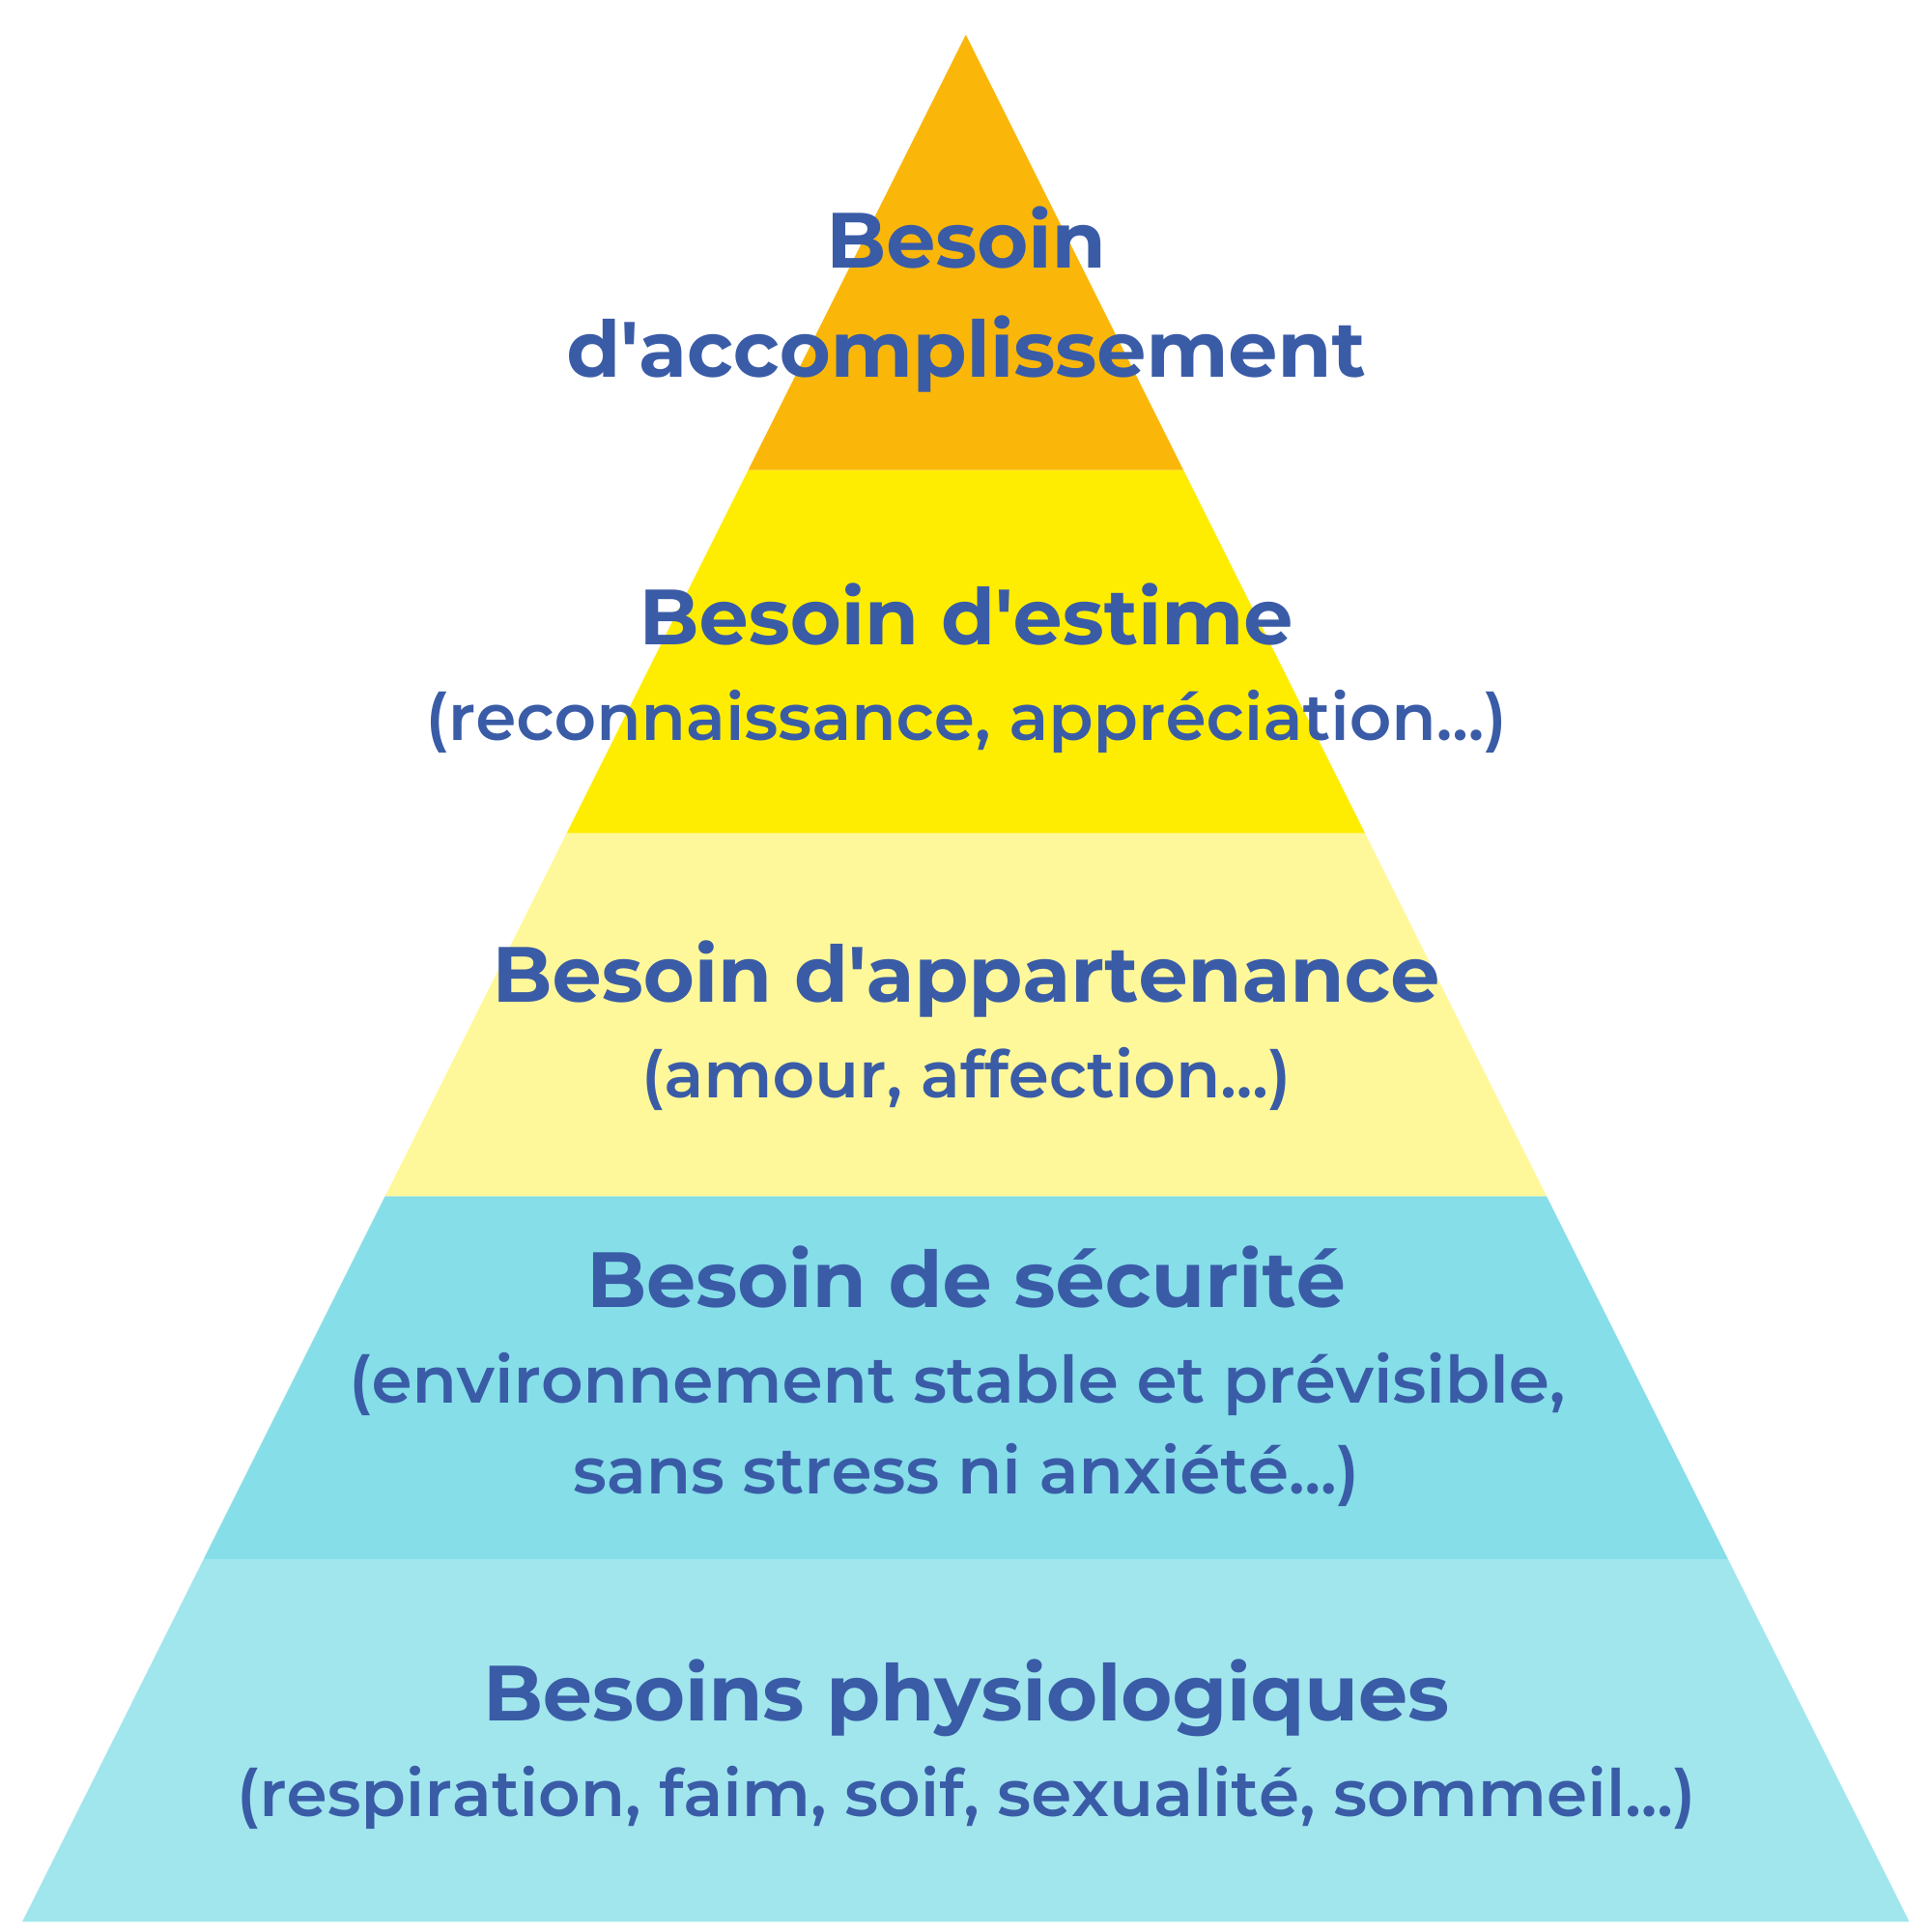 Présentation de la pyramide de Maslow, selon 5 types de besoin (accomplissement, estime, appartenance, sécurité, physiologiques)